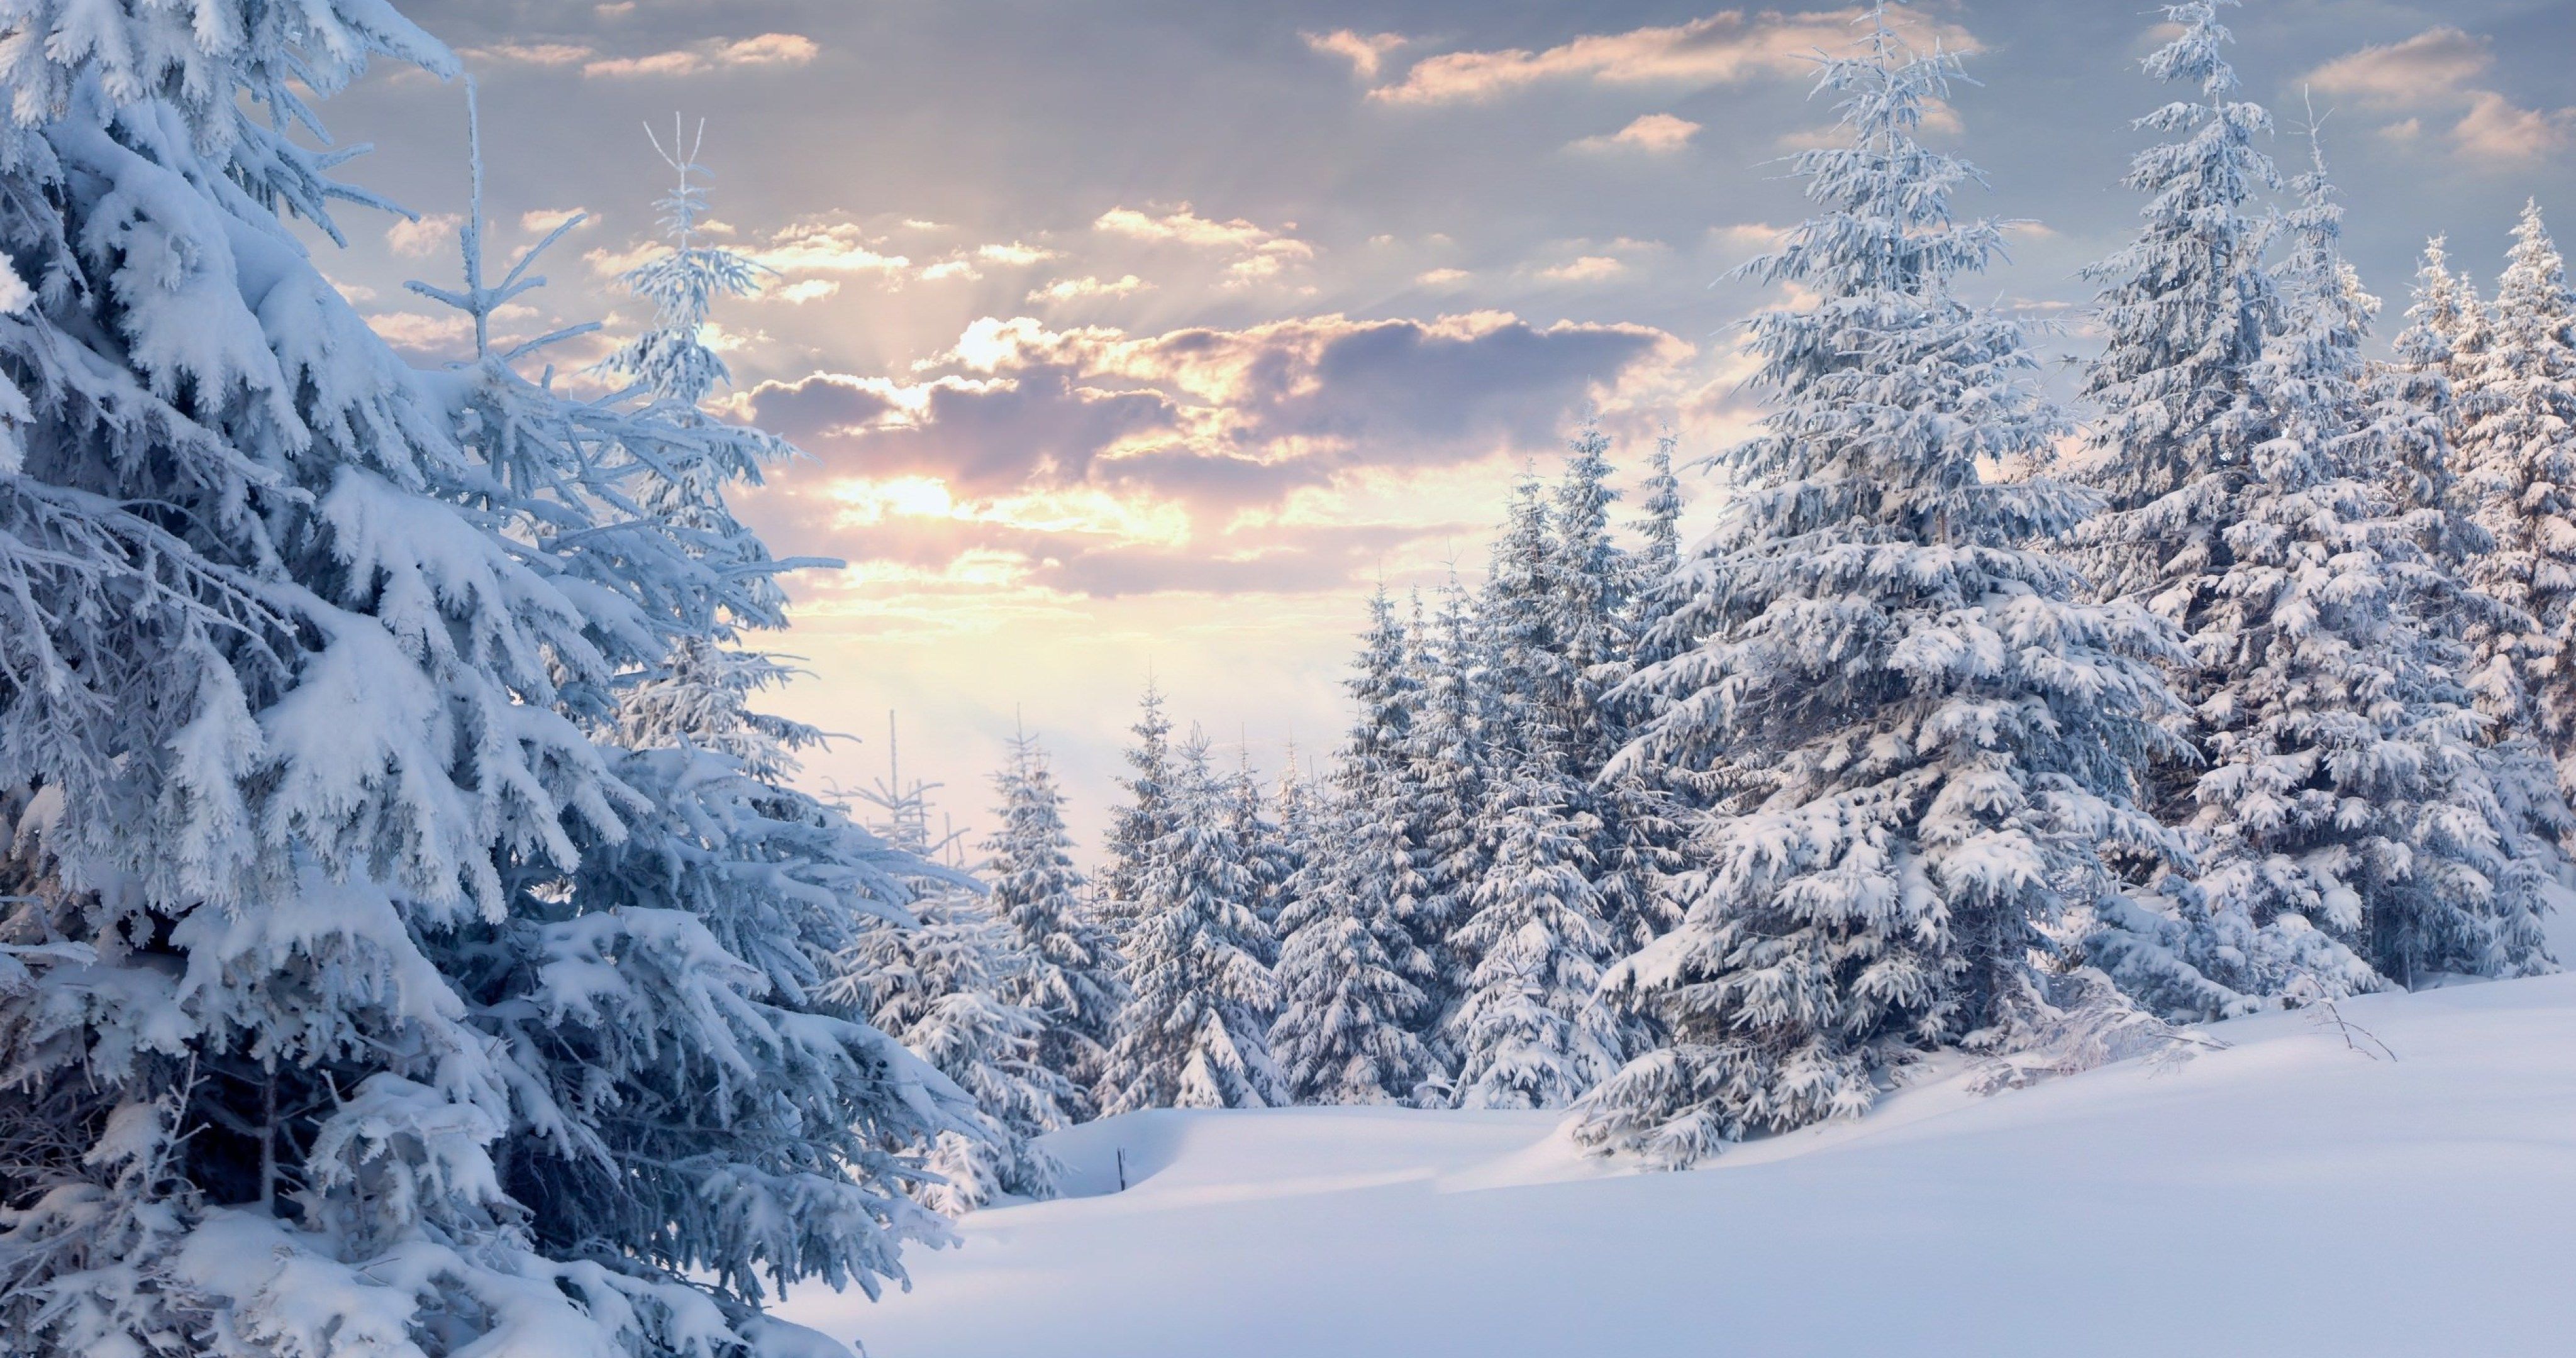 Snow 4K Wallpapers - Los mejores fondos de Snow 4K gratis - WallpaperAccess